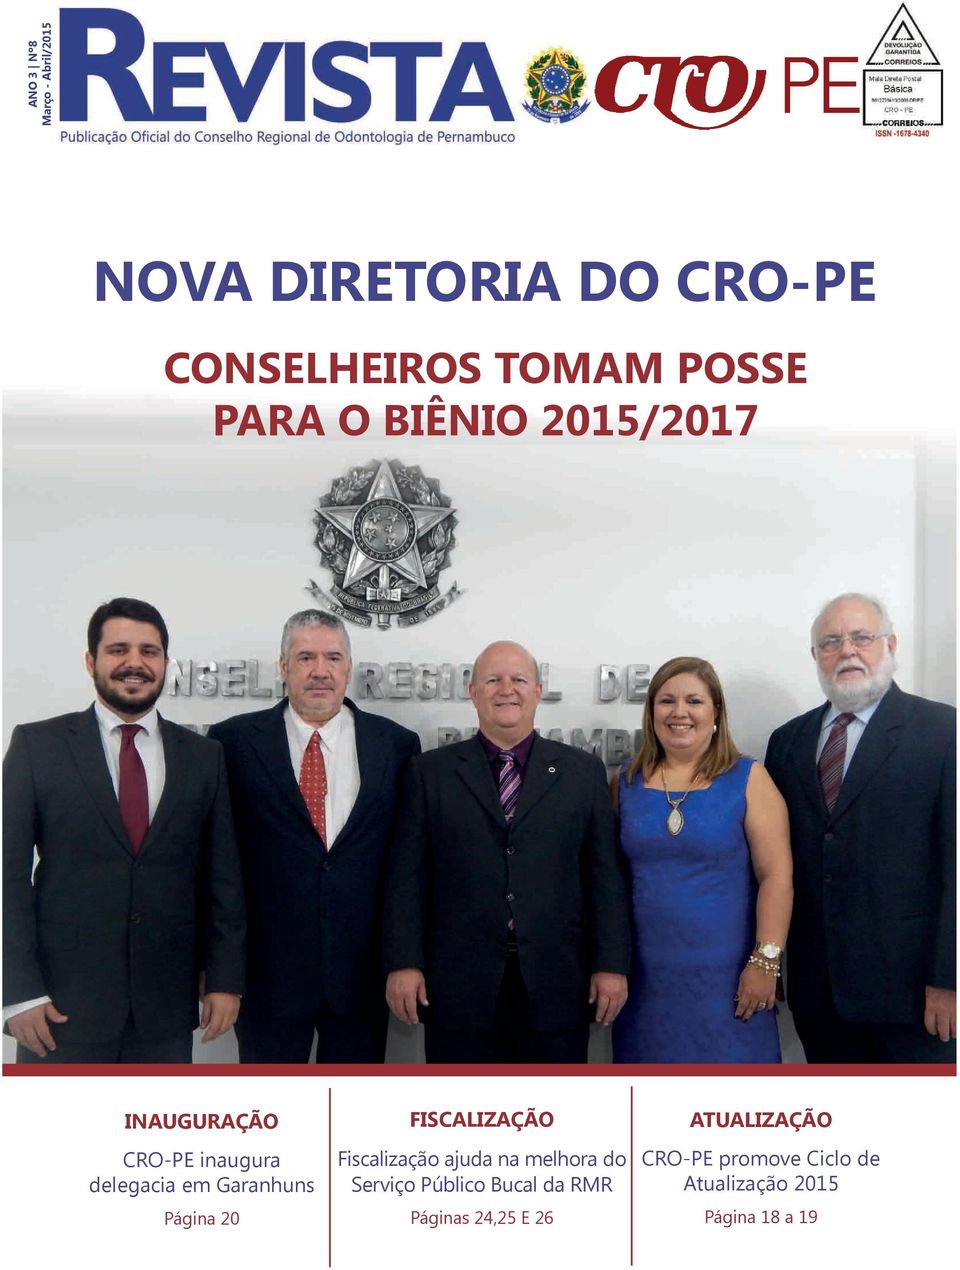 20 FISCALIZAÇÃO Fiscalização ajuda na melhora do Serviço Público Bucal da RMR